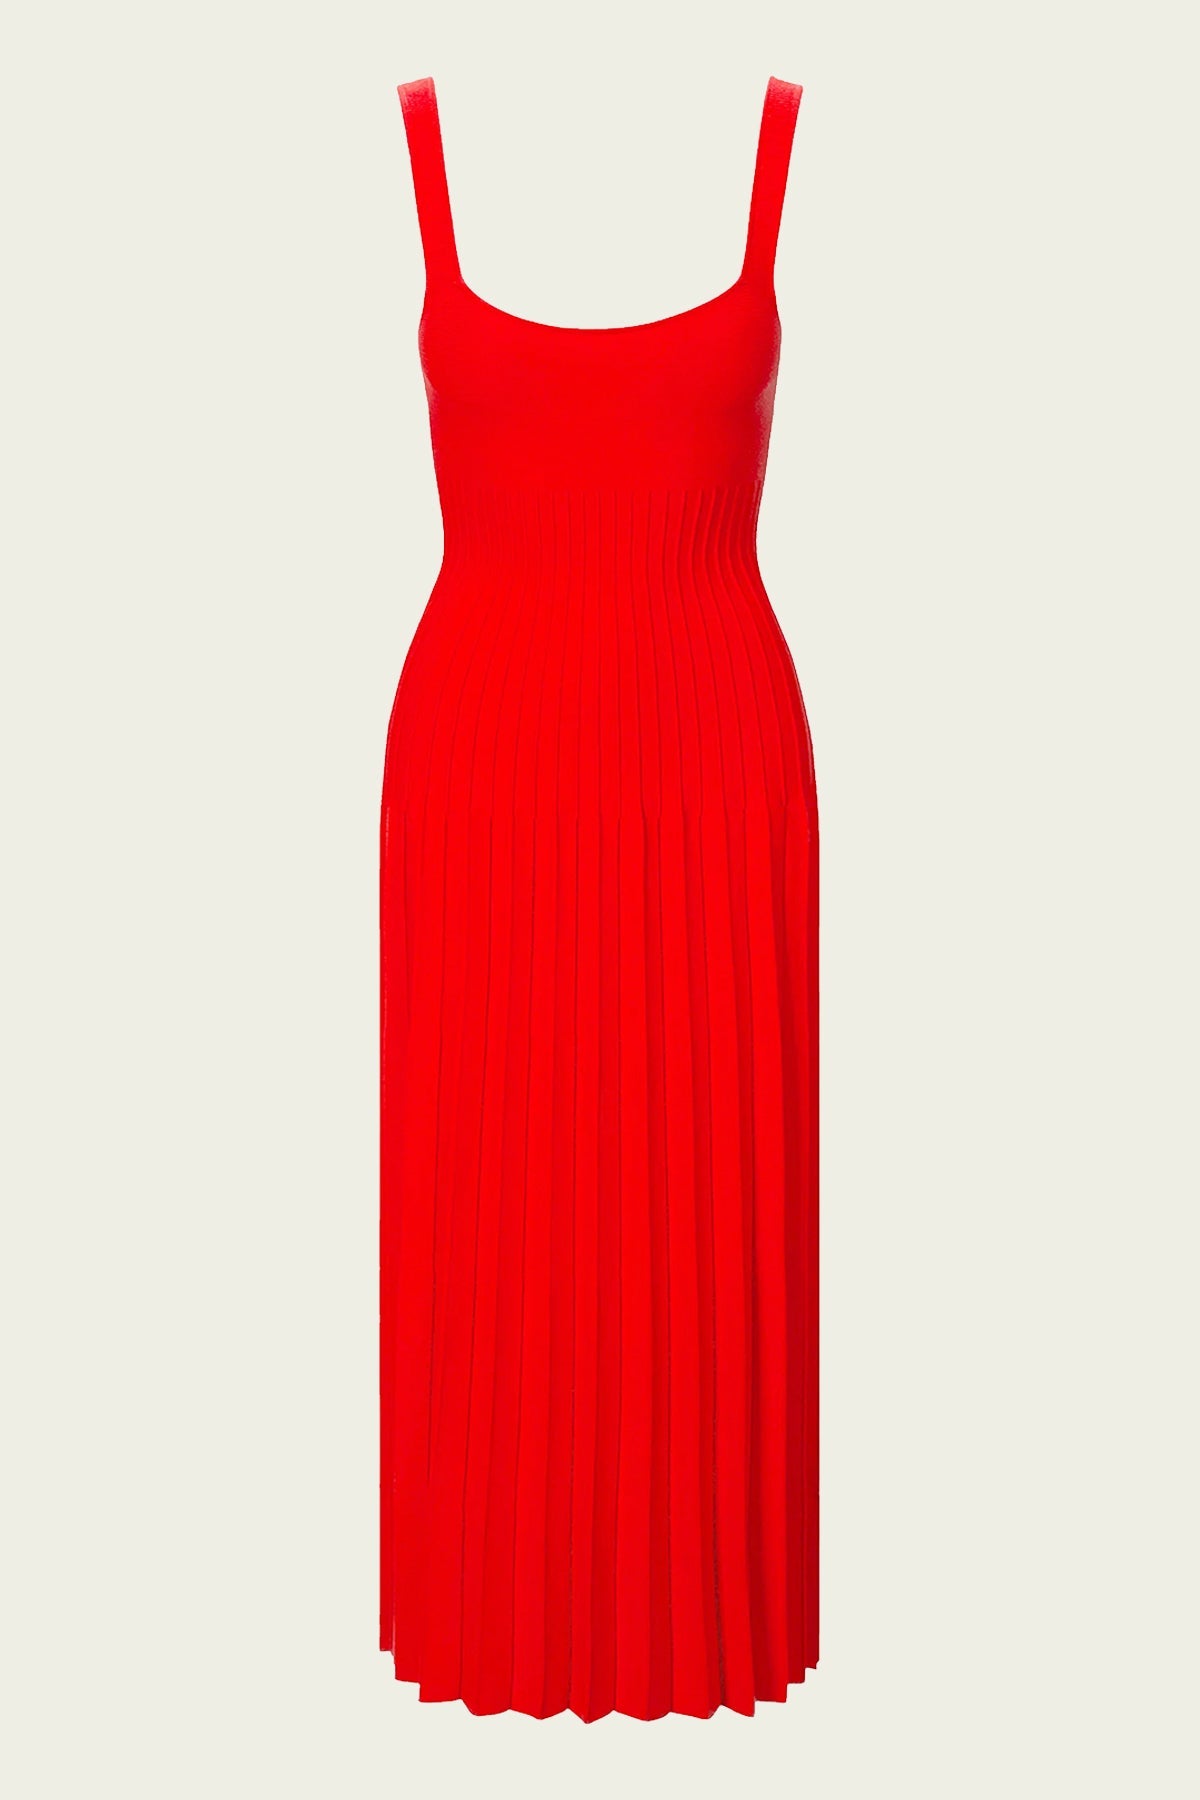 Ellison Dress in Red Rose - shop-olivia.com